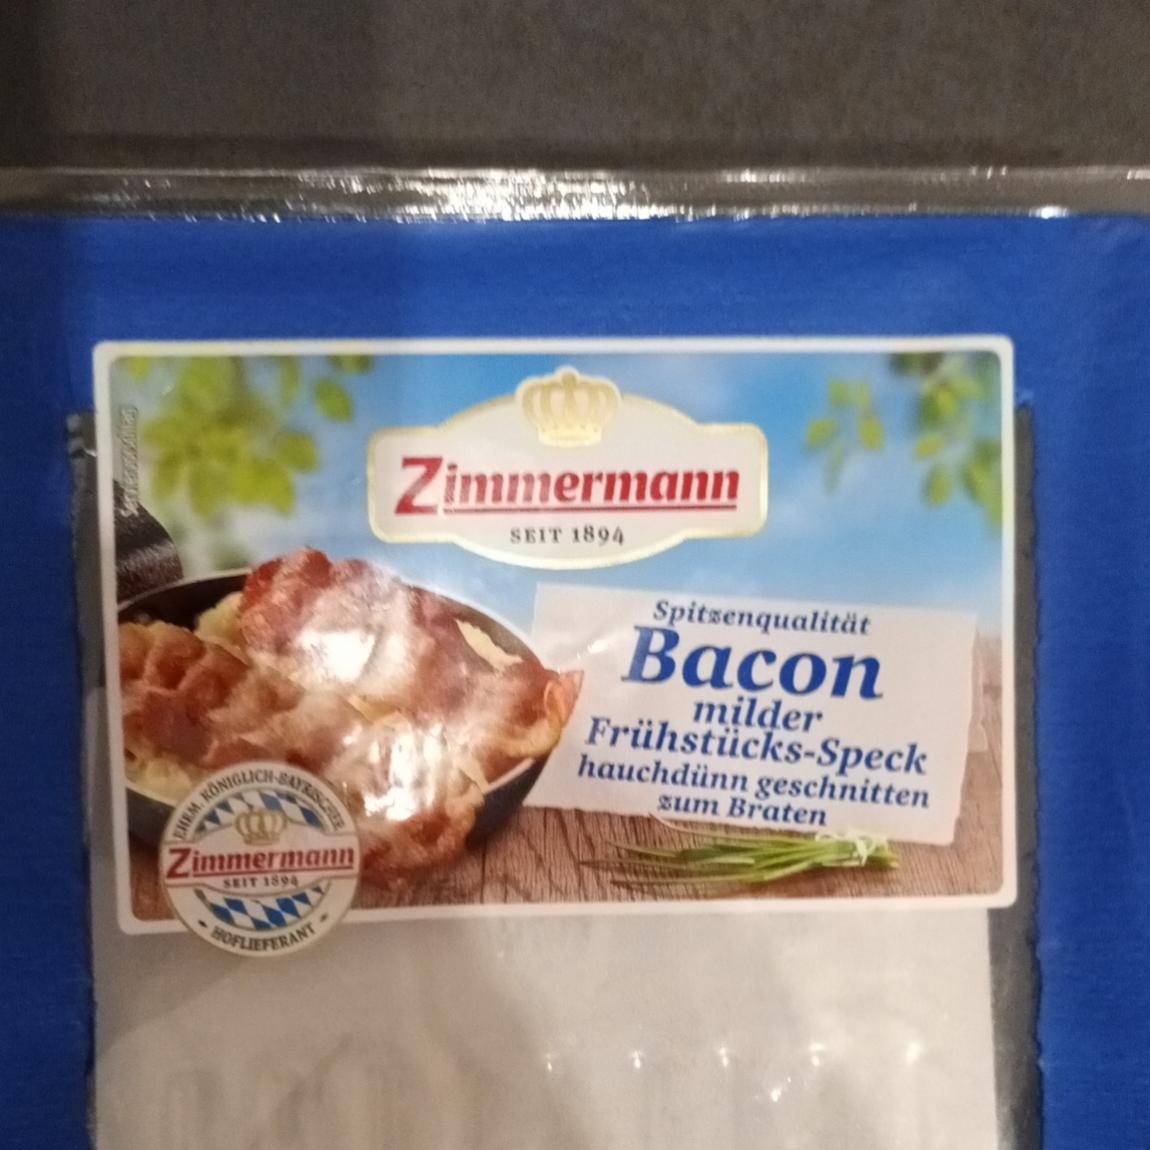 Fotografie - Spitzenqualität Bacon milder Frühstücks-Speck Zimmermann